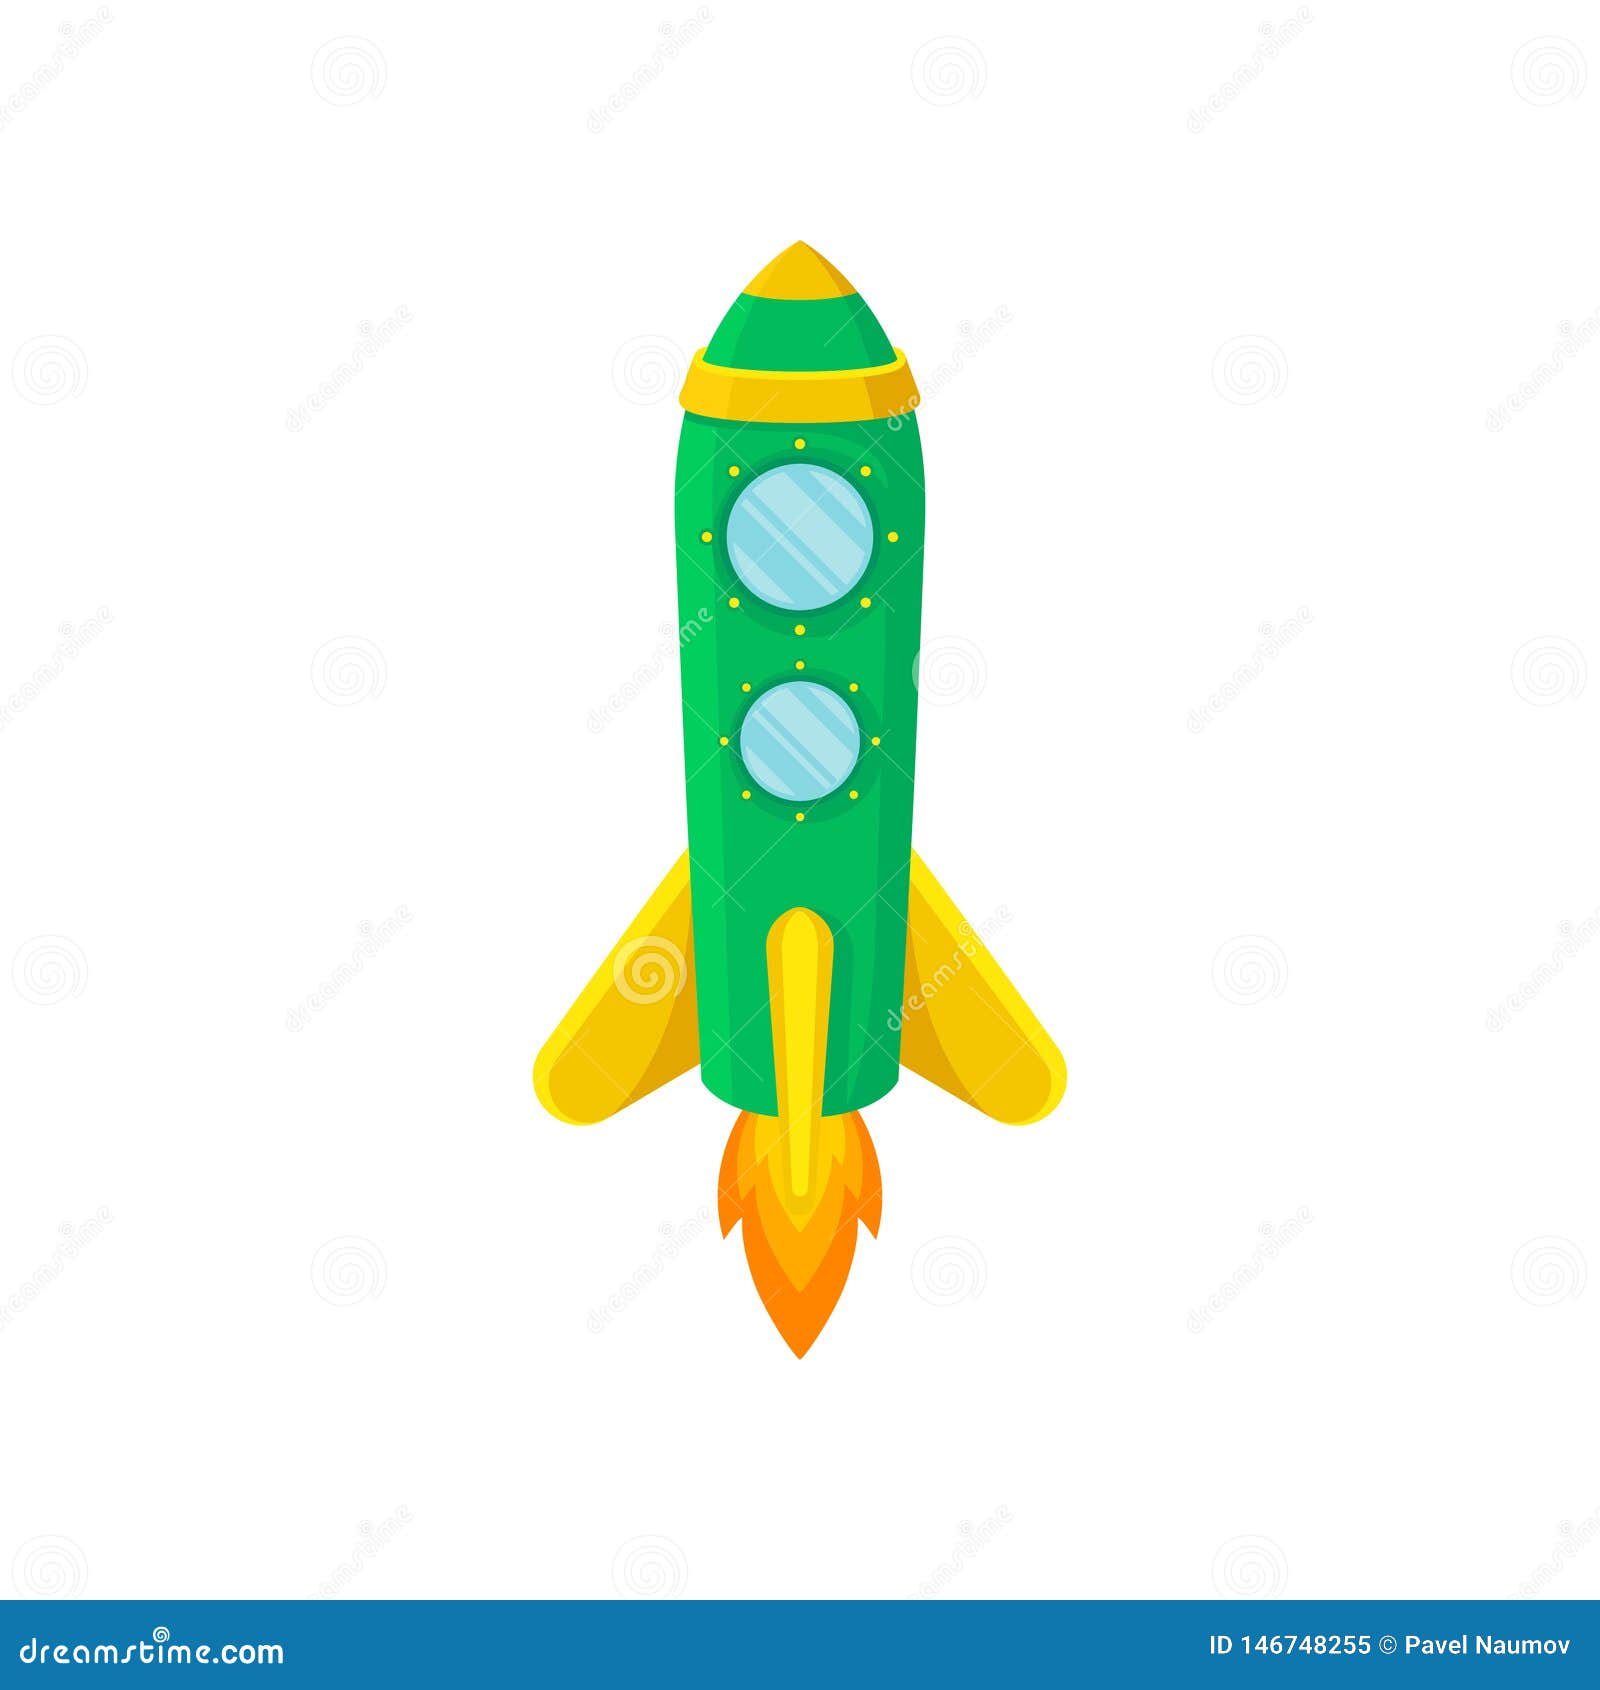 Ракета на зеленом фоне. Зеленая ракета. Зеленая ракета на белом фоне. Ракеты с желтой полосой. Желтая,зеленая,красная ракета.